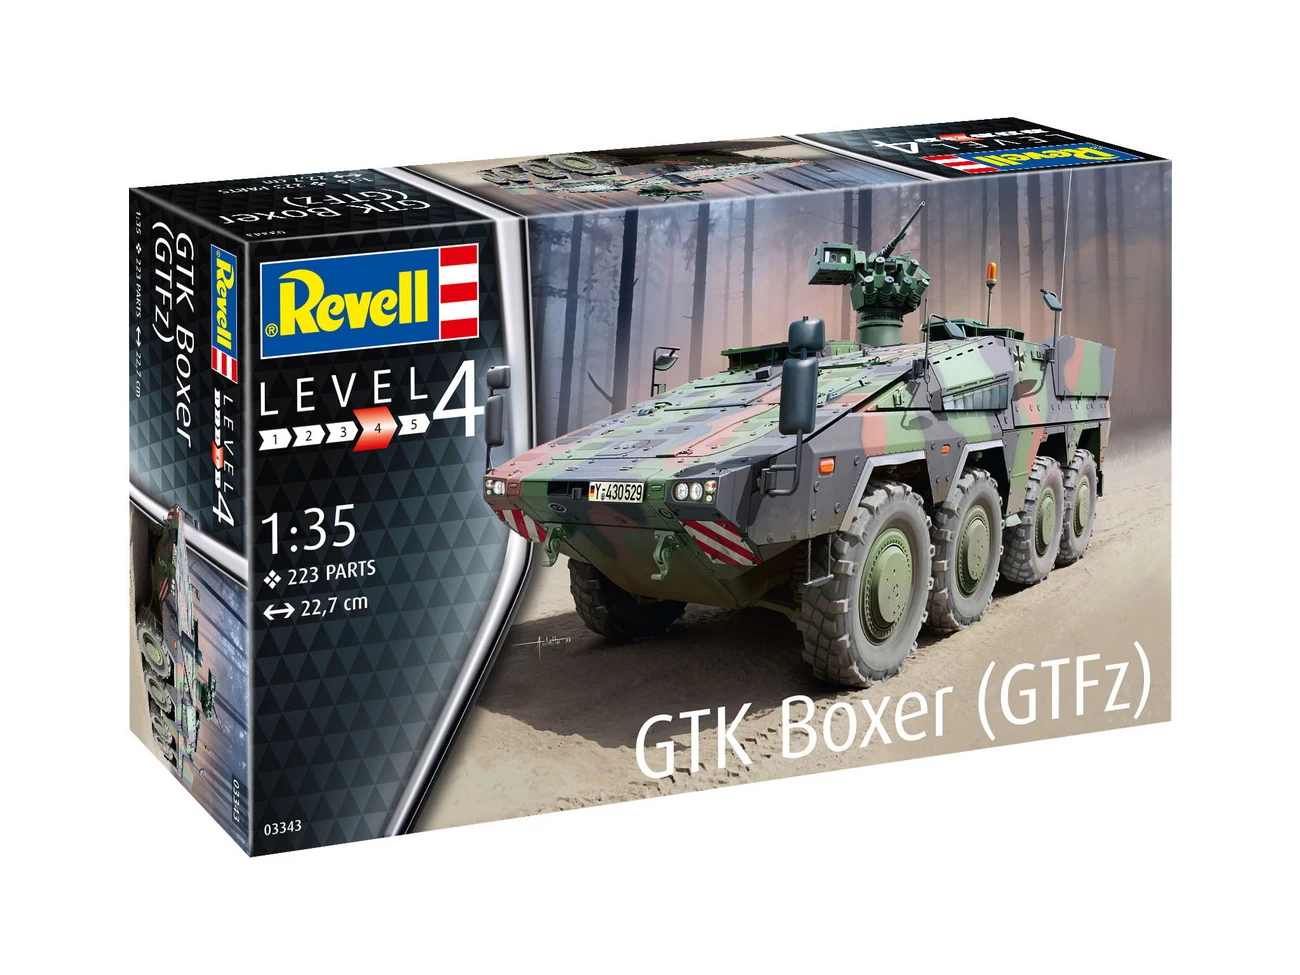 Revell 03343 - GTK Boxer GTFz